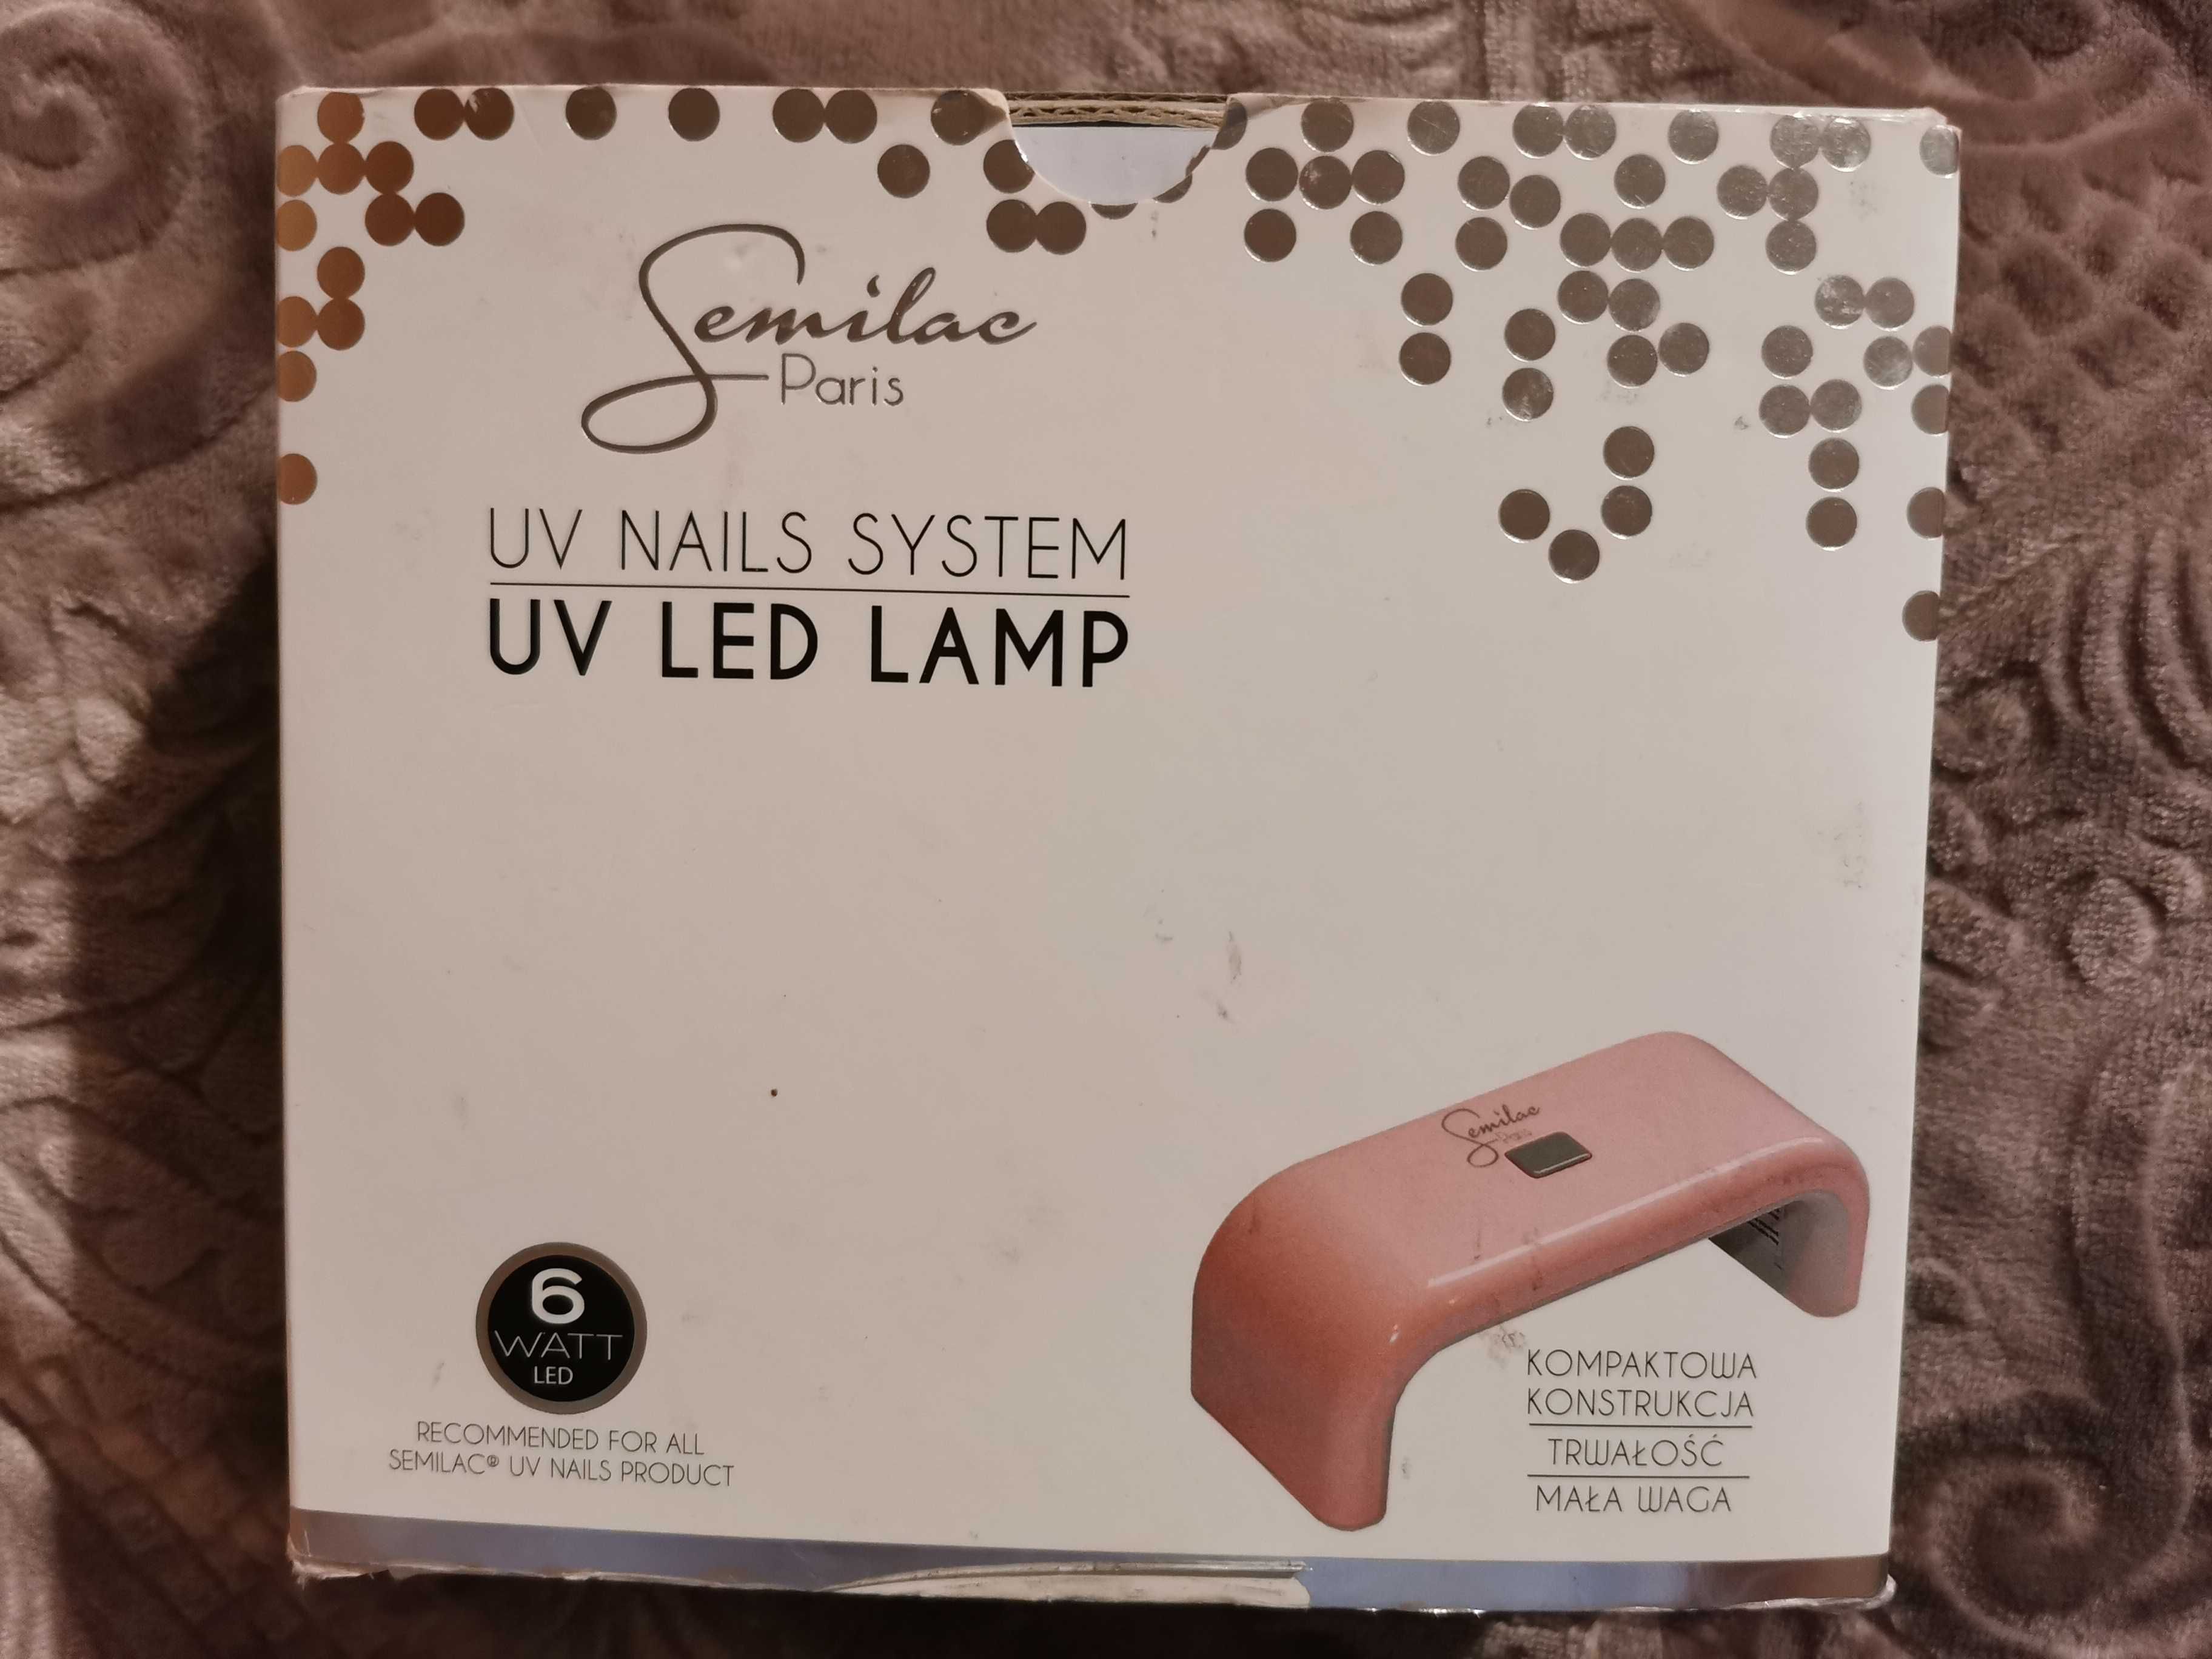 Uv lampa Semilac